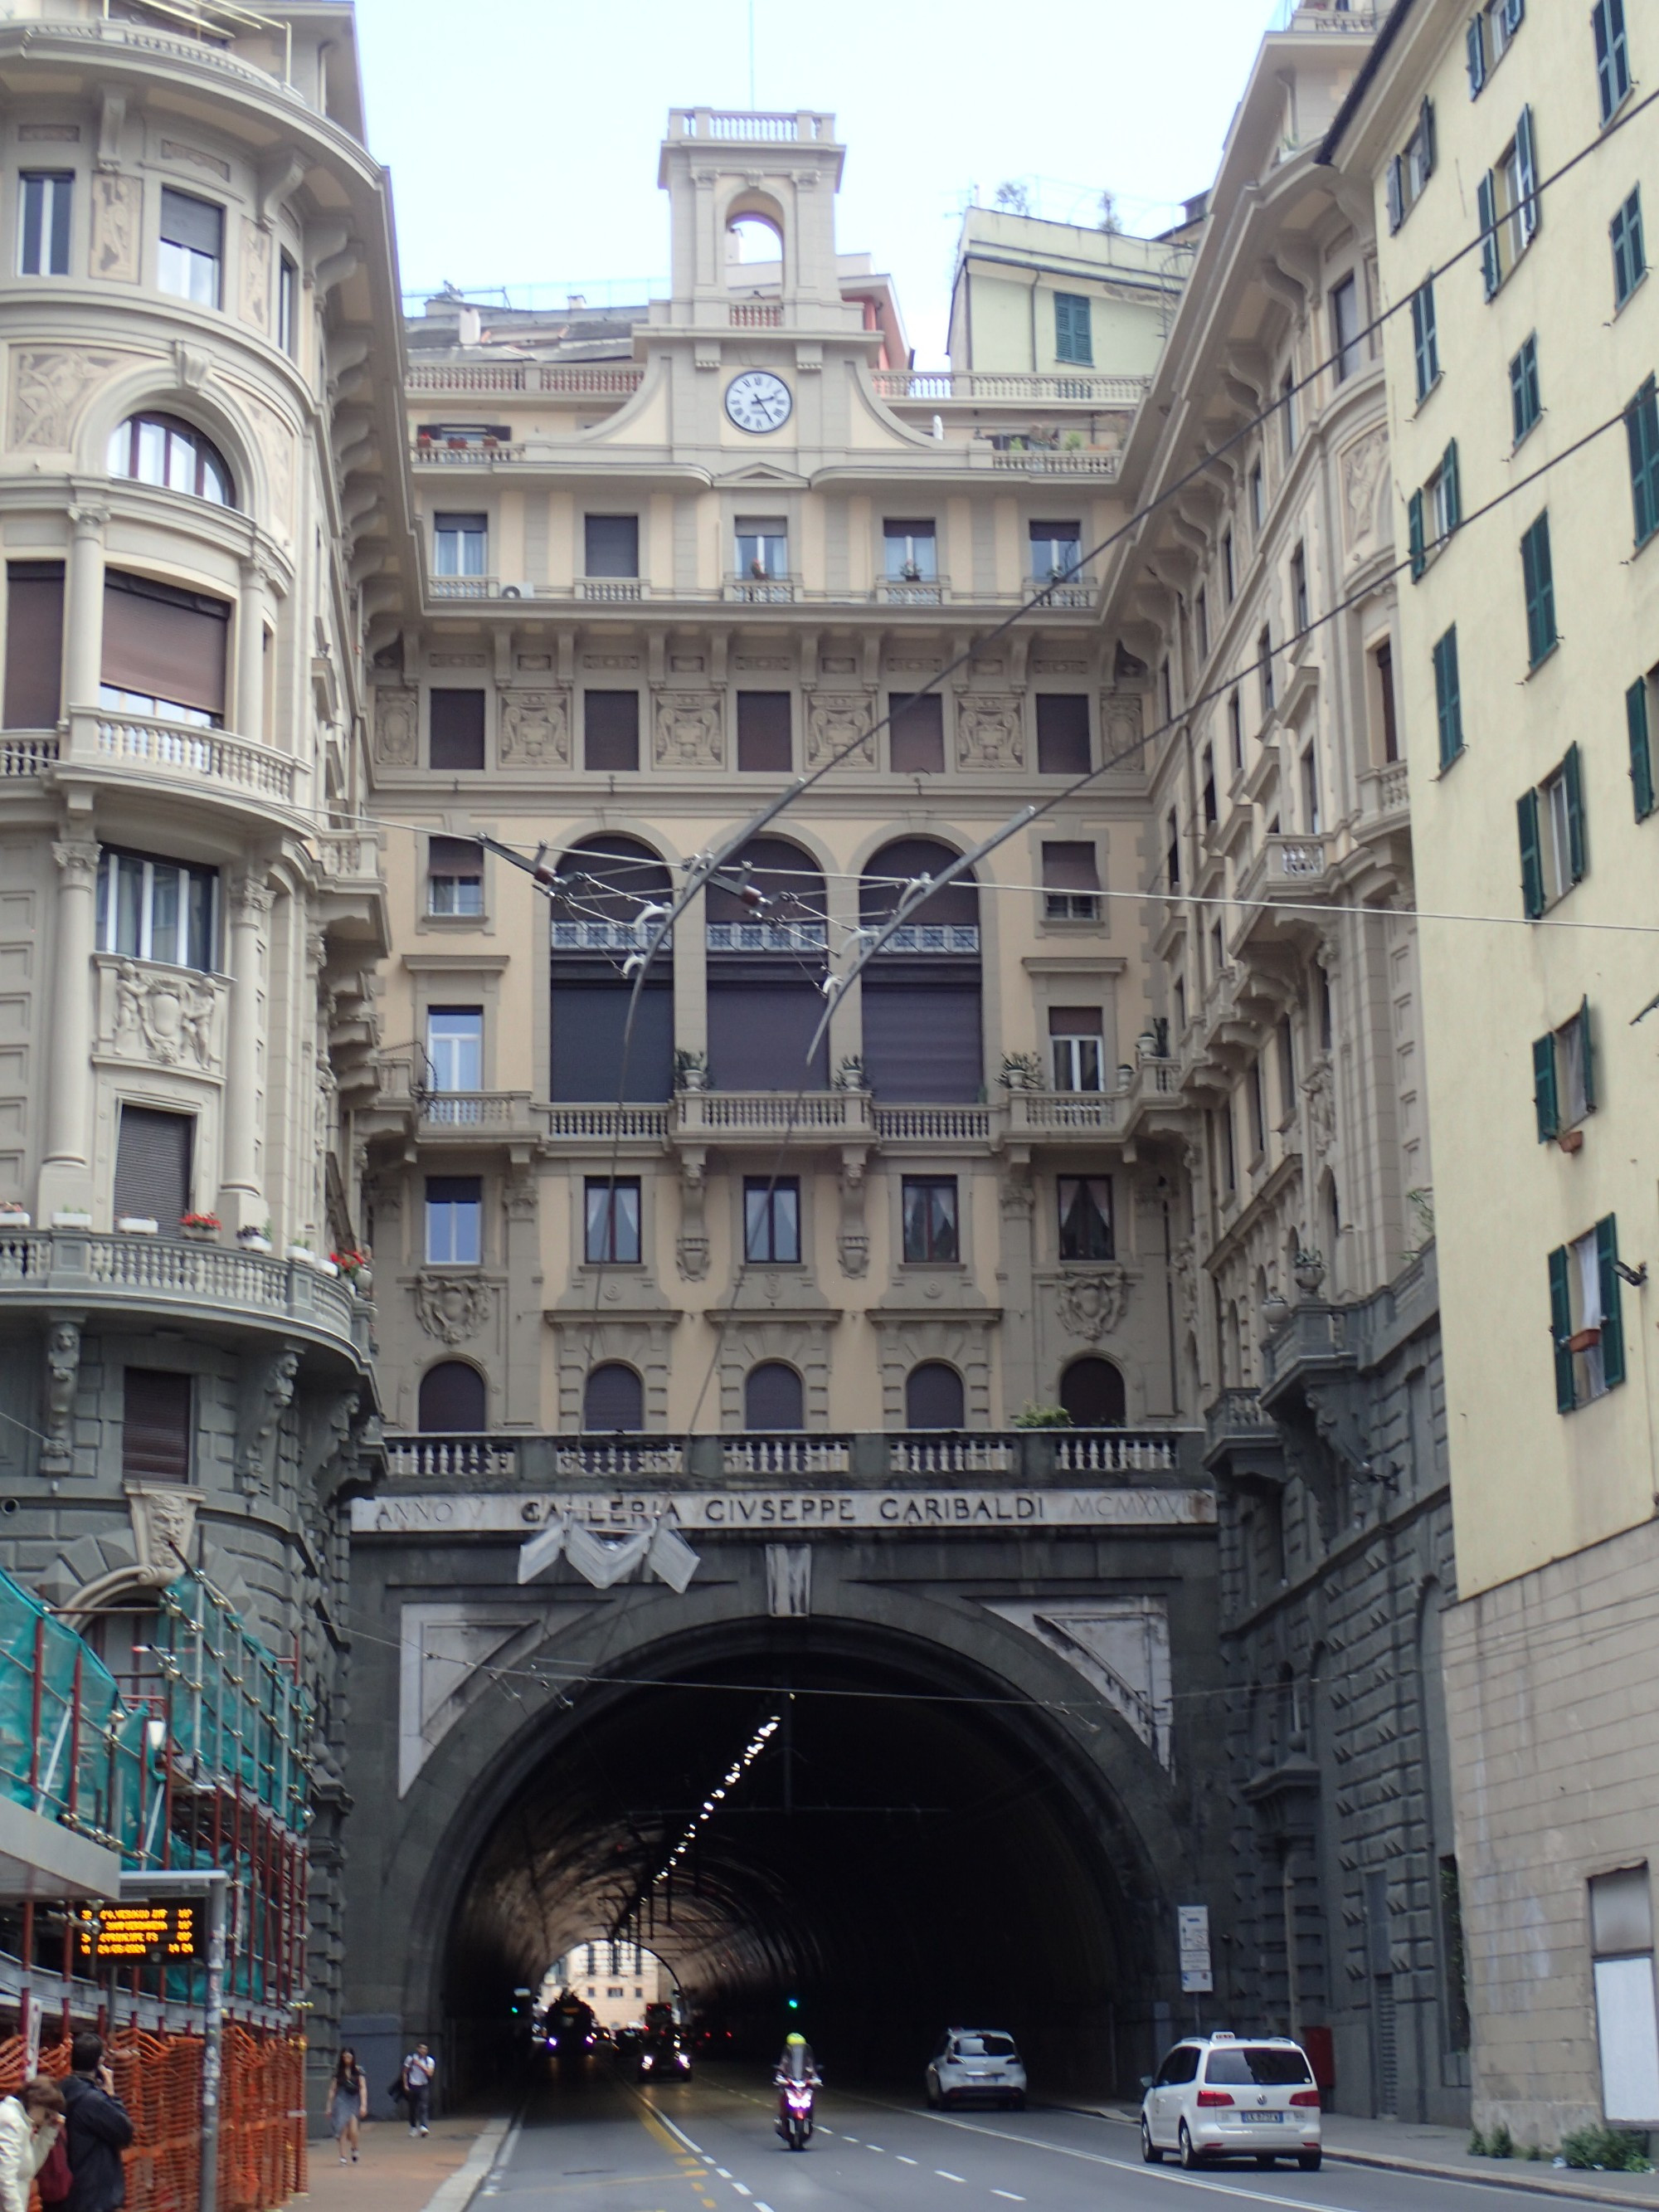 Tunnel Galleria Garibaldi, Italy